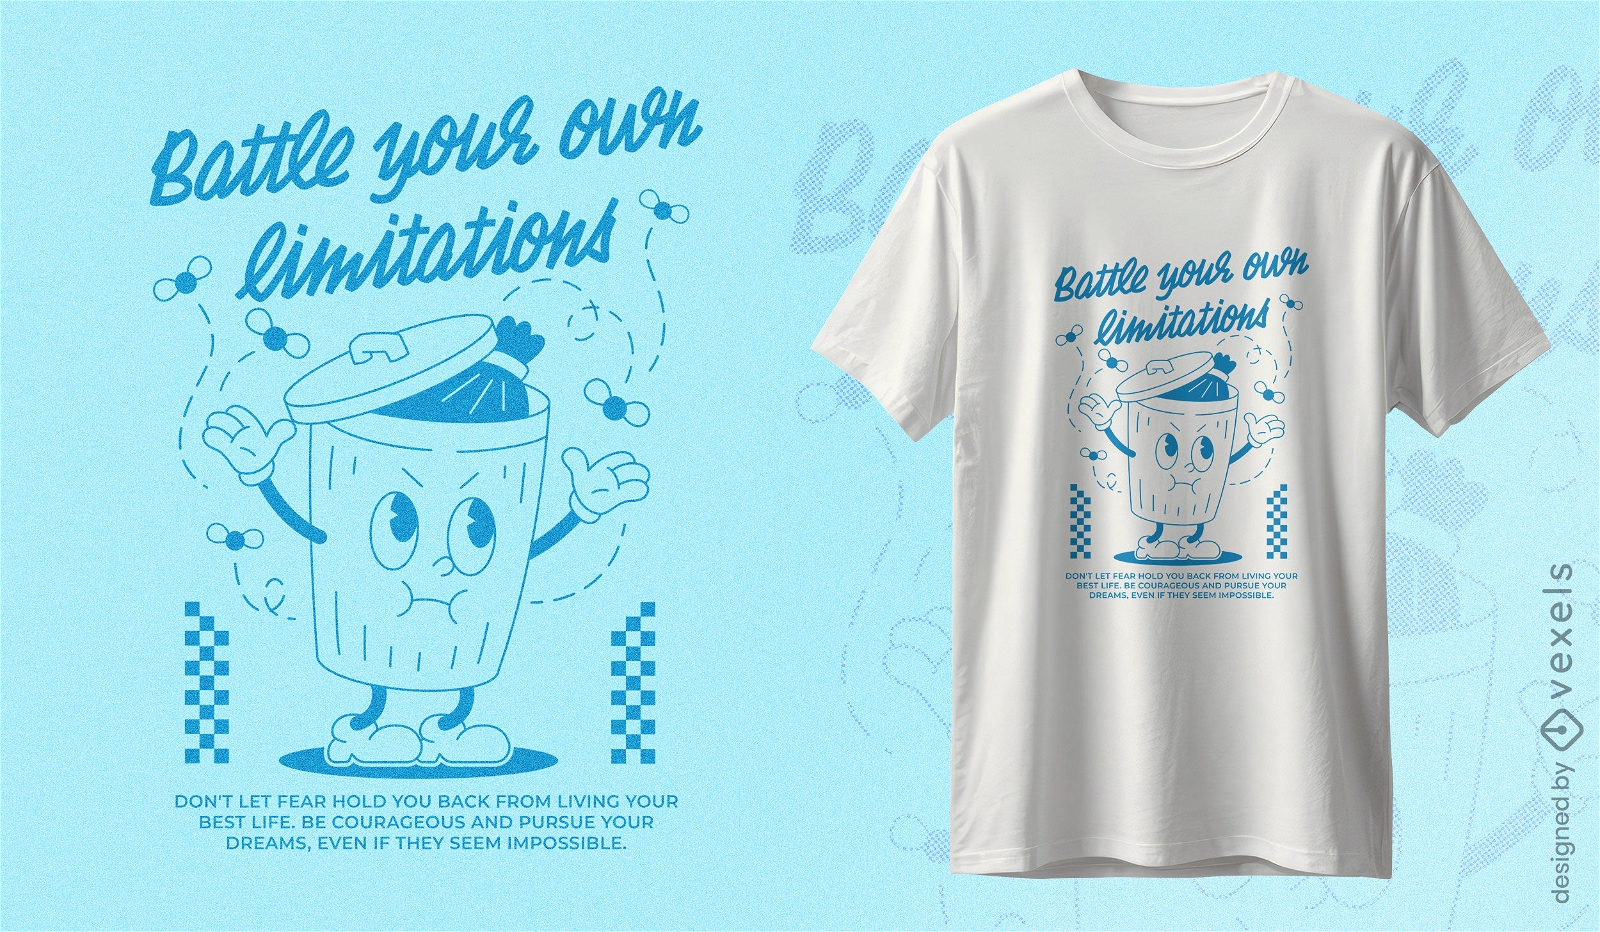 Battle your own limitations t-shirt design